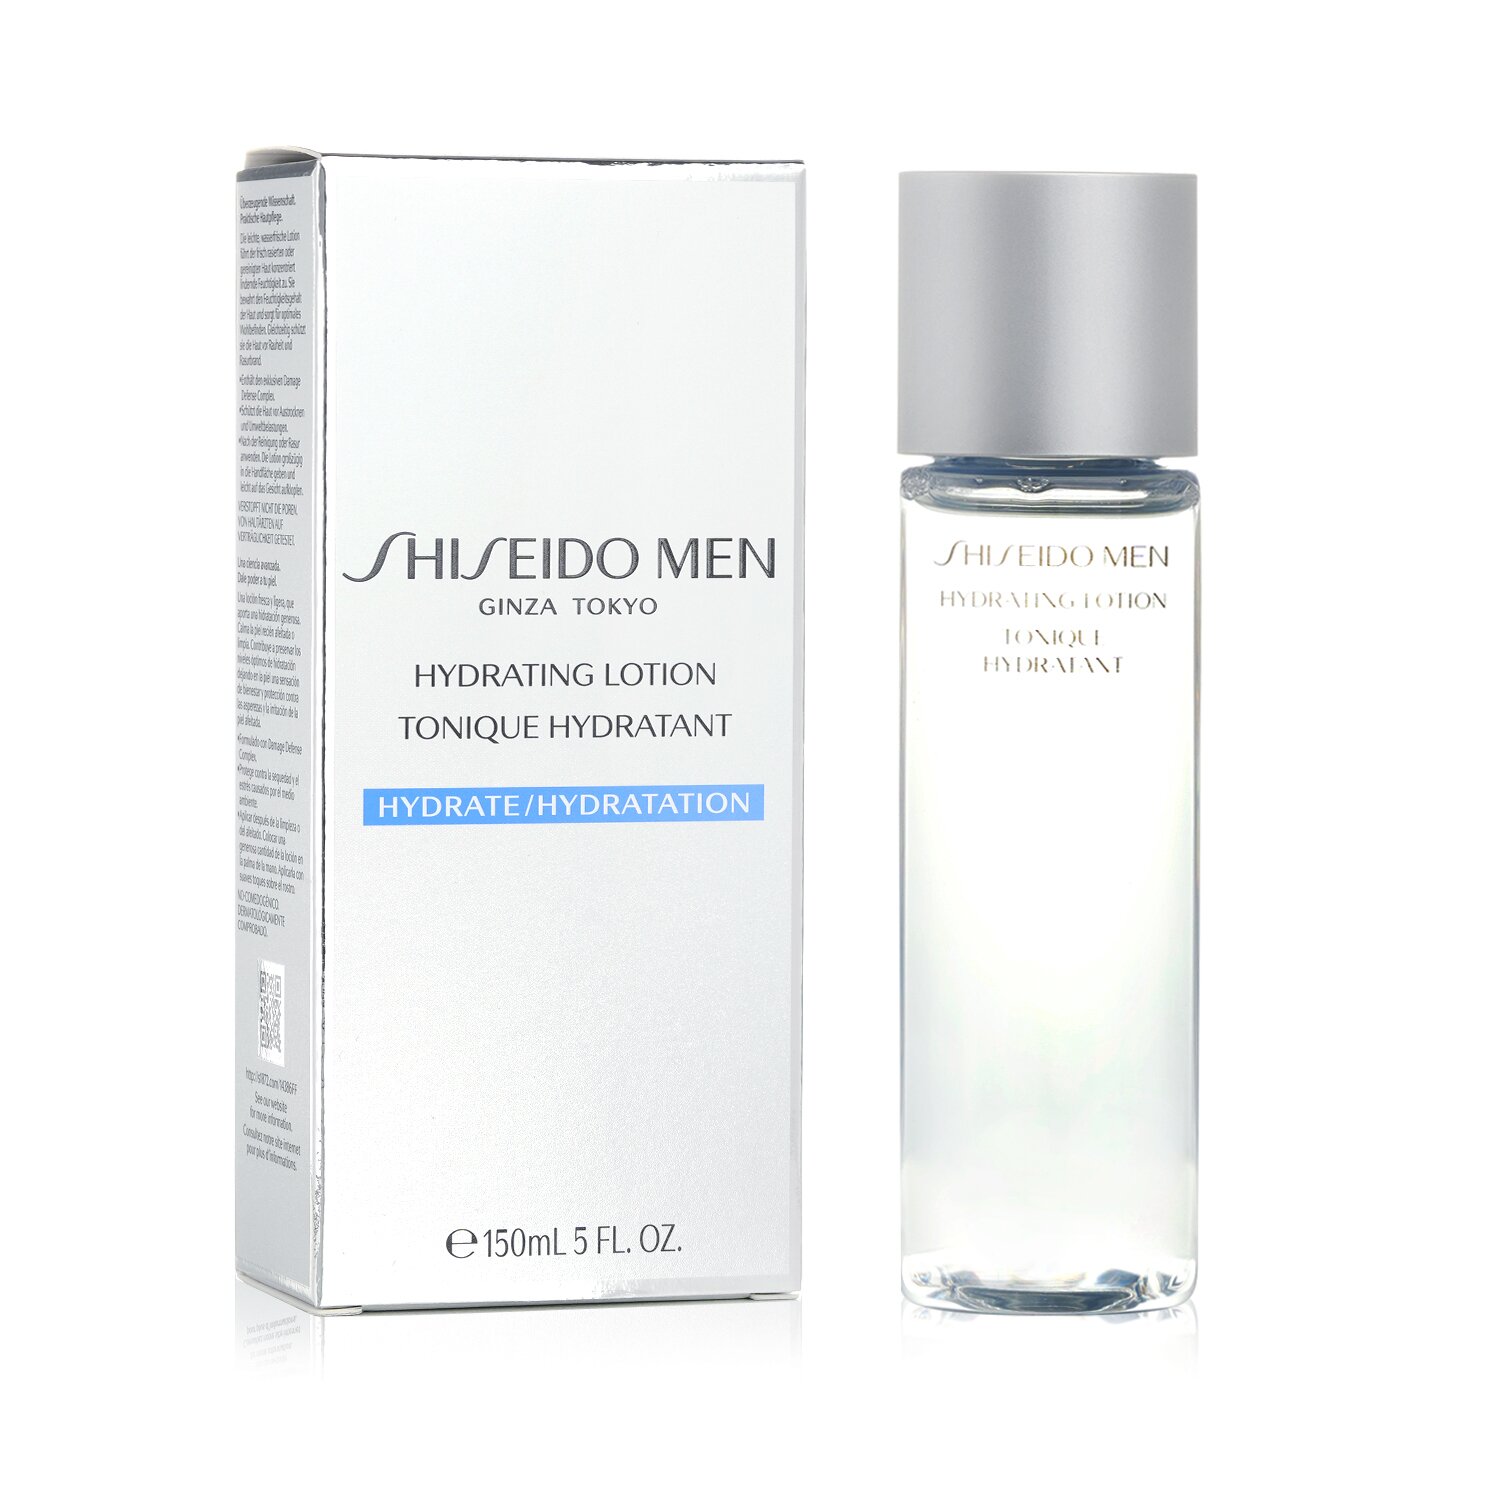 Shiseido Men hidratizirajući losion 150ml/5oz